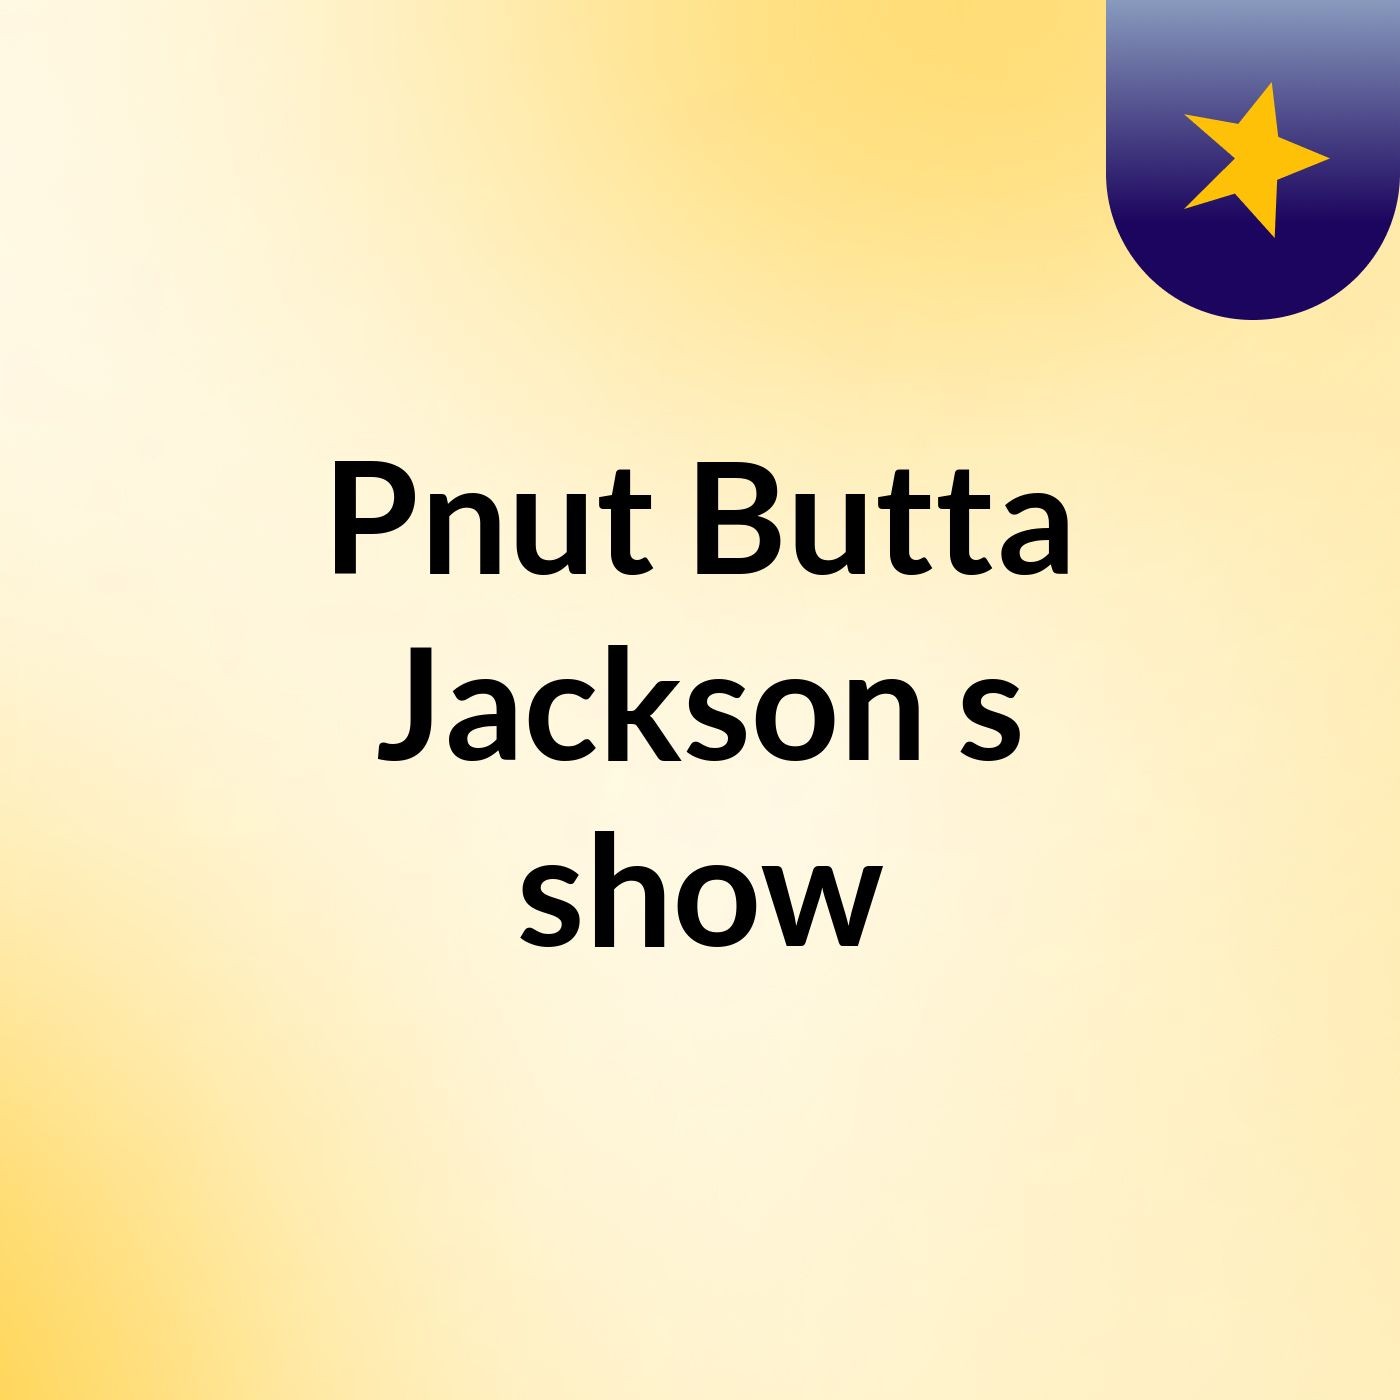 Pnut Butta Jackson's show